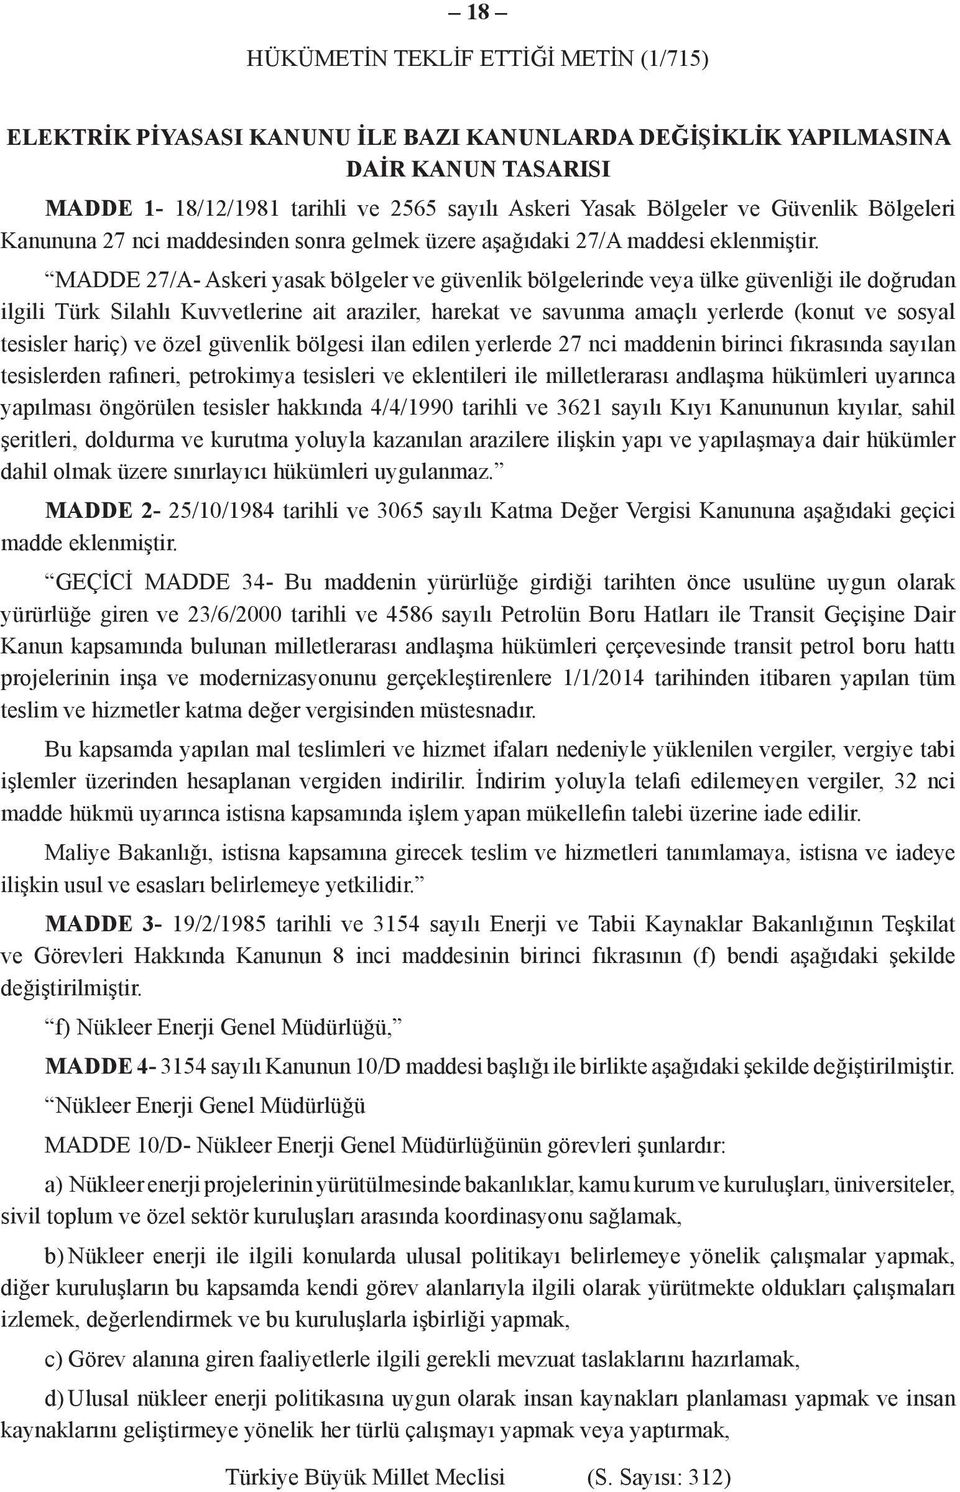 MADDE 27/A- Askeri yasak bölgeler ve güvenlik bölgelerinde veya ülke güvenliği ile doğrudan ilgili Türk Silahlı Kuvvetlerine ait araziler, harekat ve savunma amaçlı yerlerde (konut ve sosyal tesisler